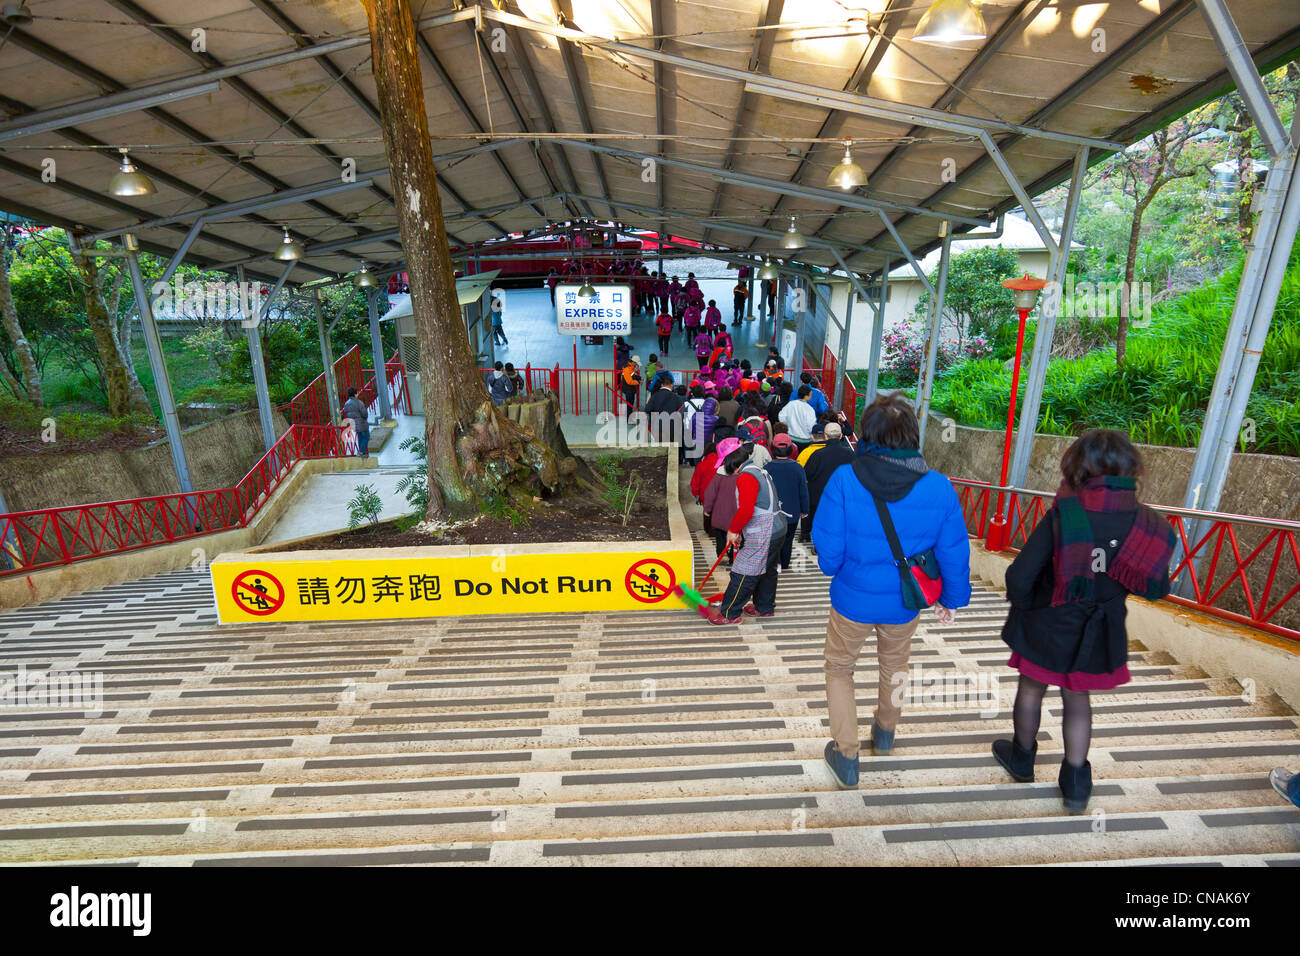 Les touristes en ordre décroissant de la plate-forme de la gare de forêt Alishan après le lever du soleil une visualisation à Chushan près de Alishan Taiwan. JMH5932 Banque D'Images